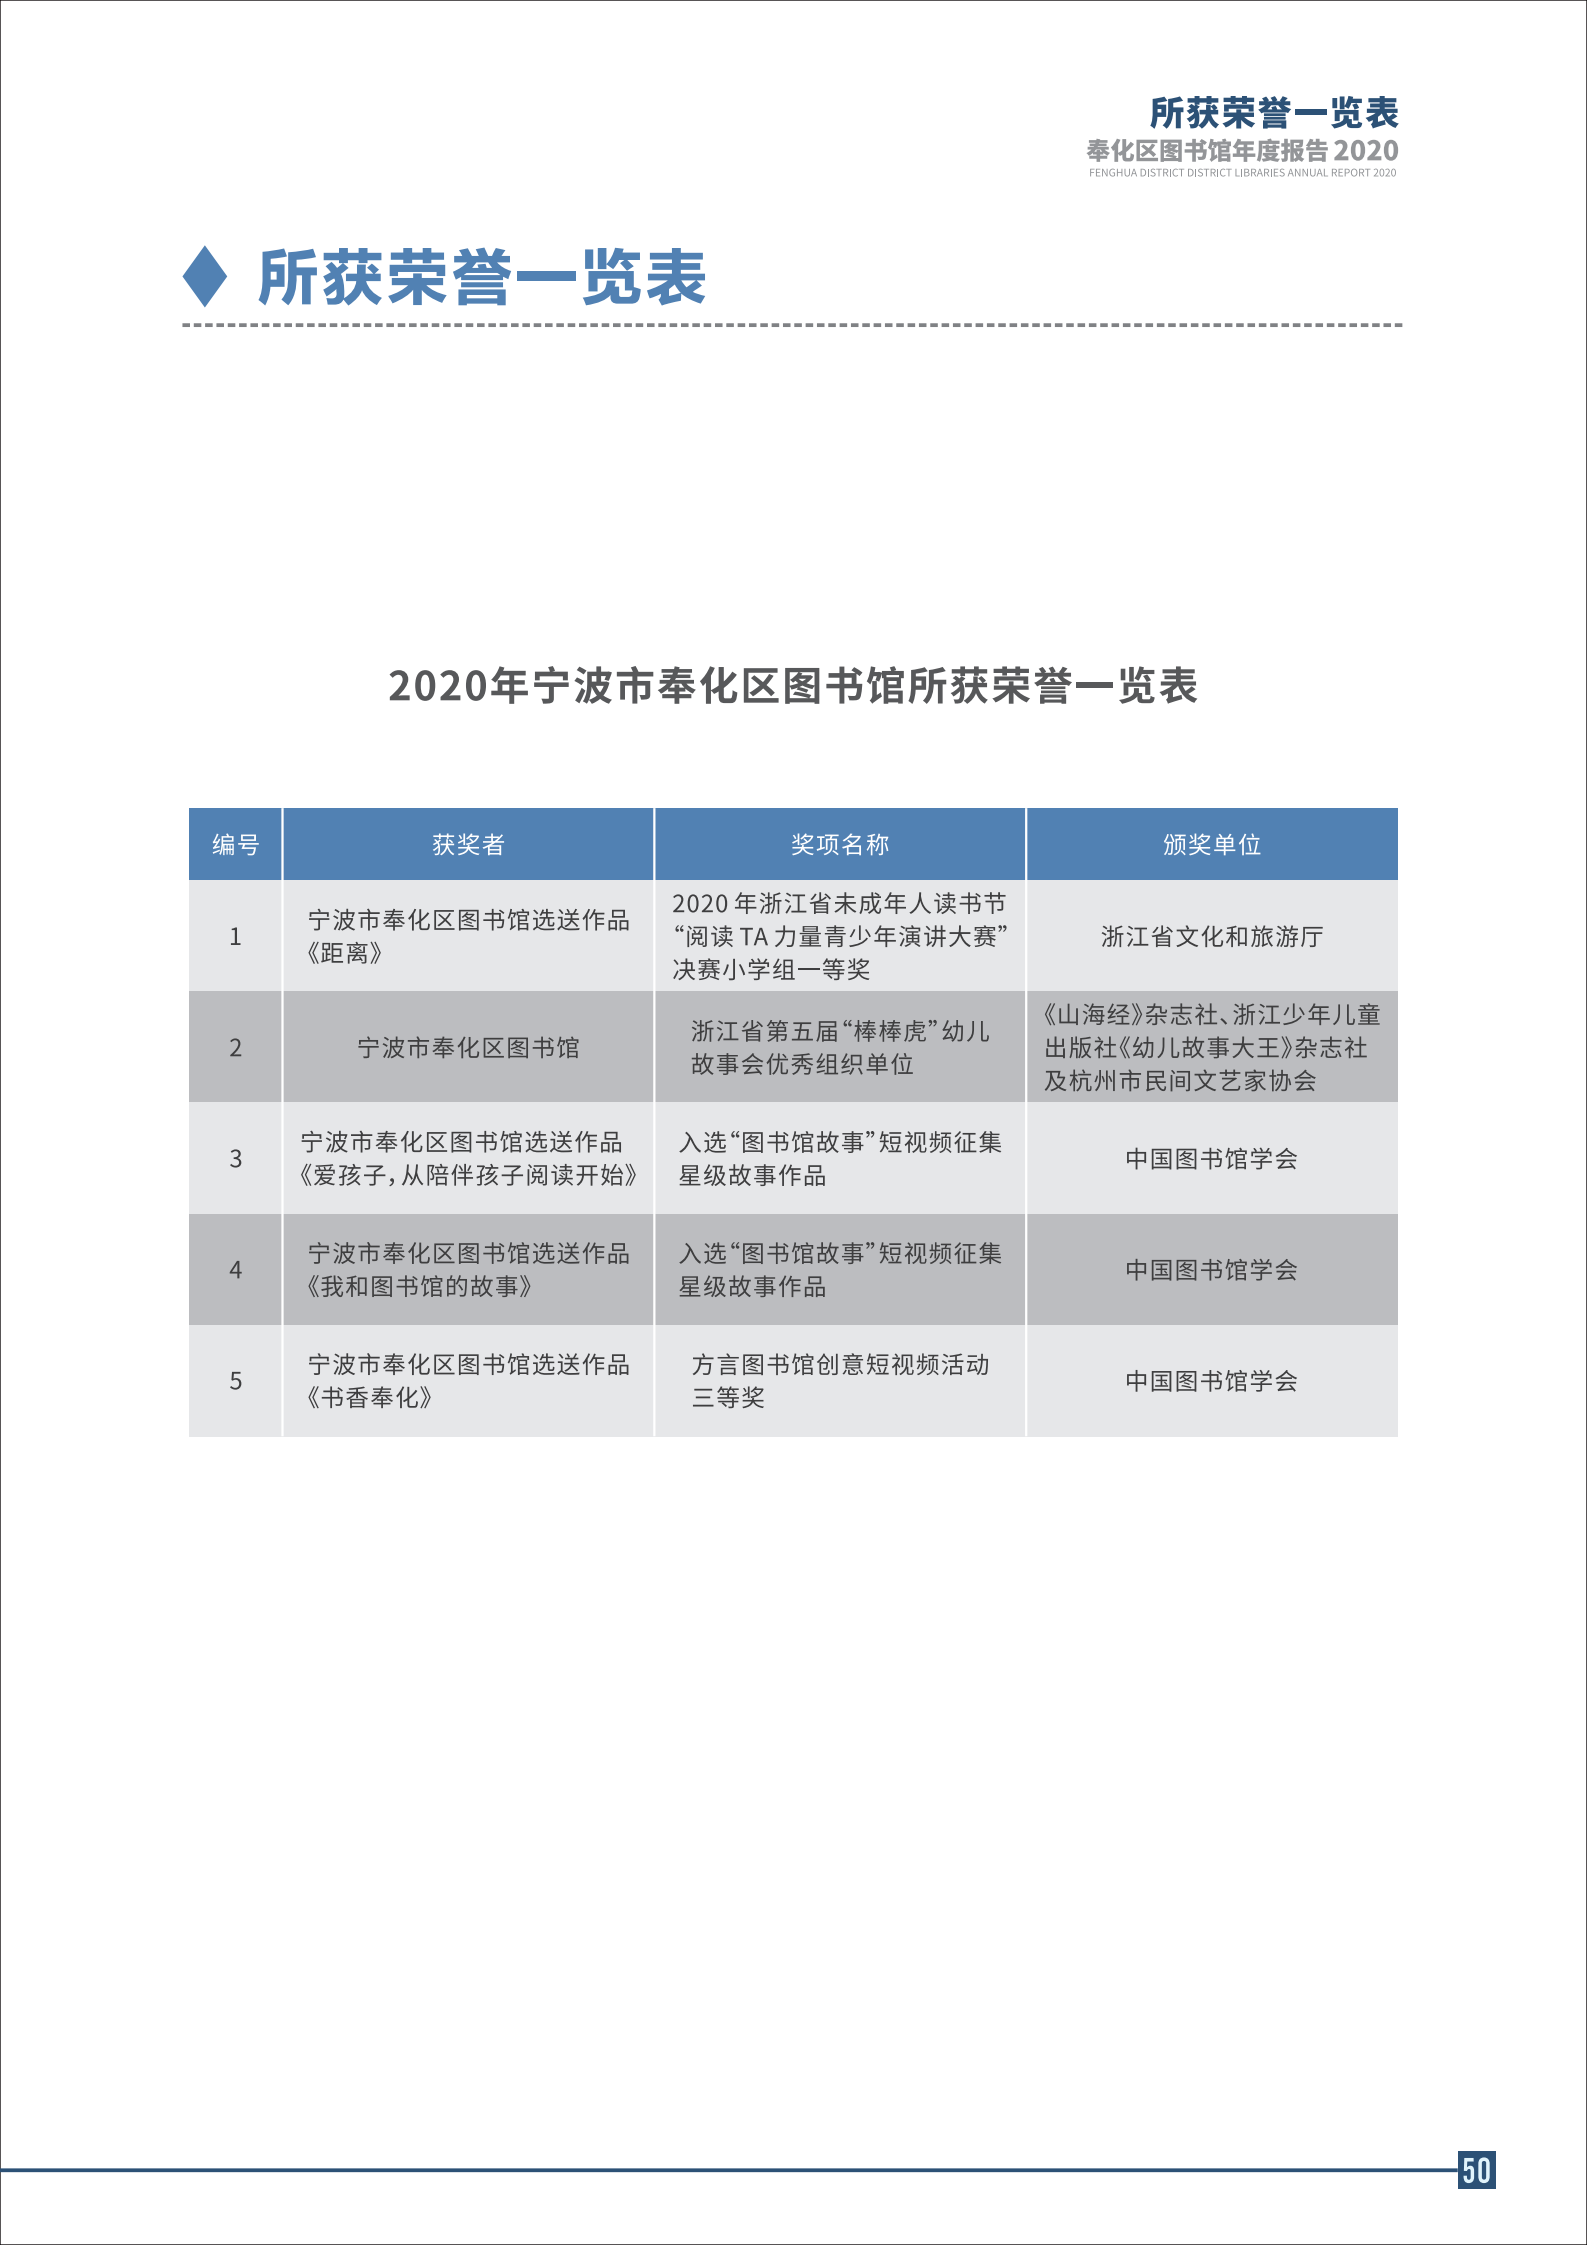 宁波市奉化区图书馆2020年年度报告 终稿_50.png